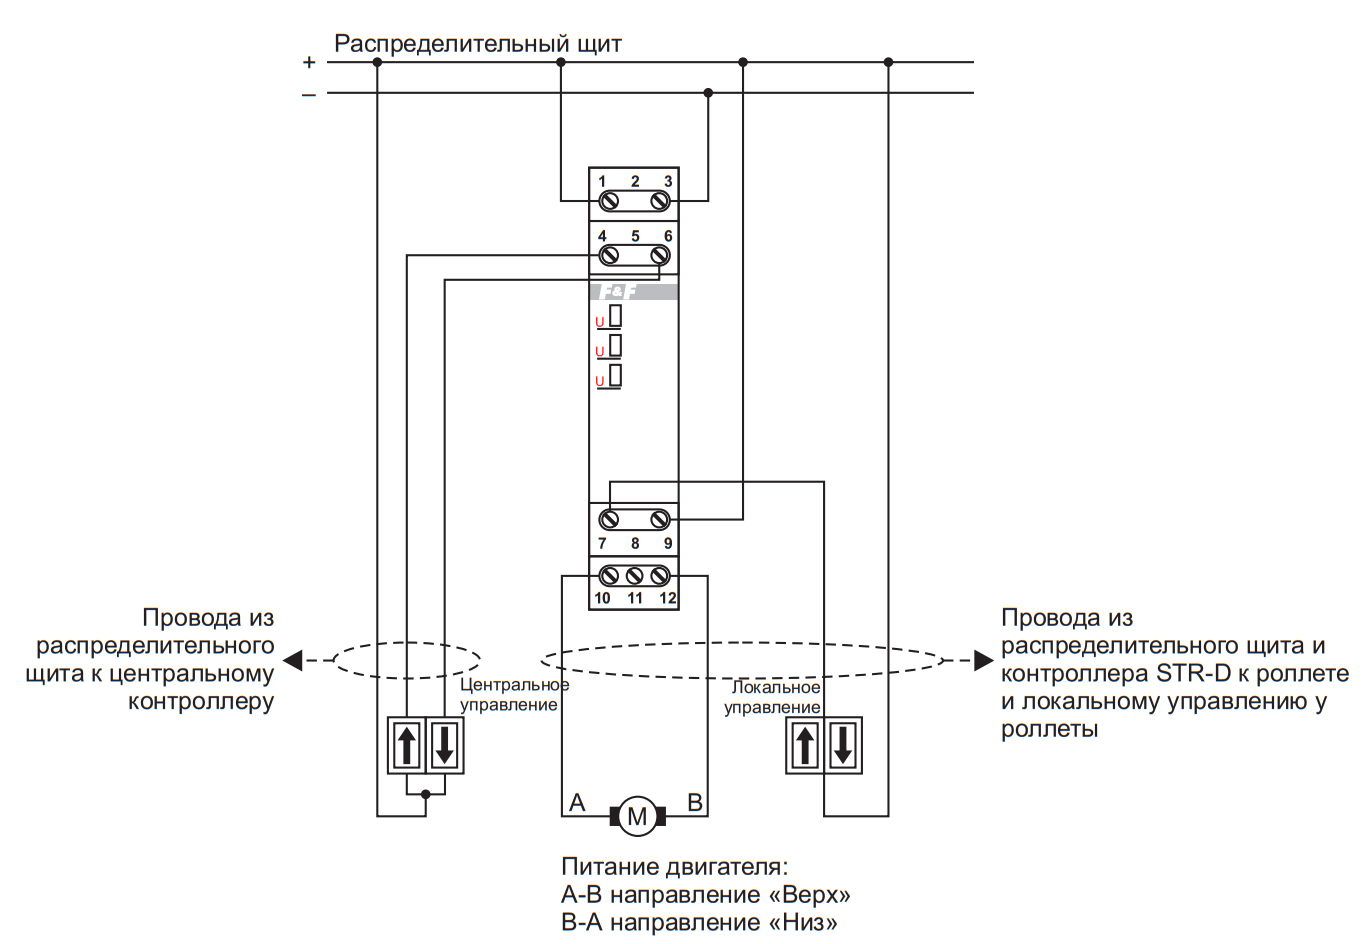 Пример кабельной системы: режим с одной локальной кнопкой